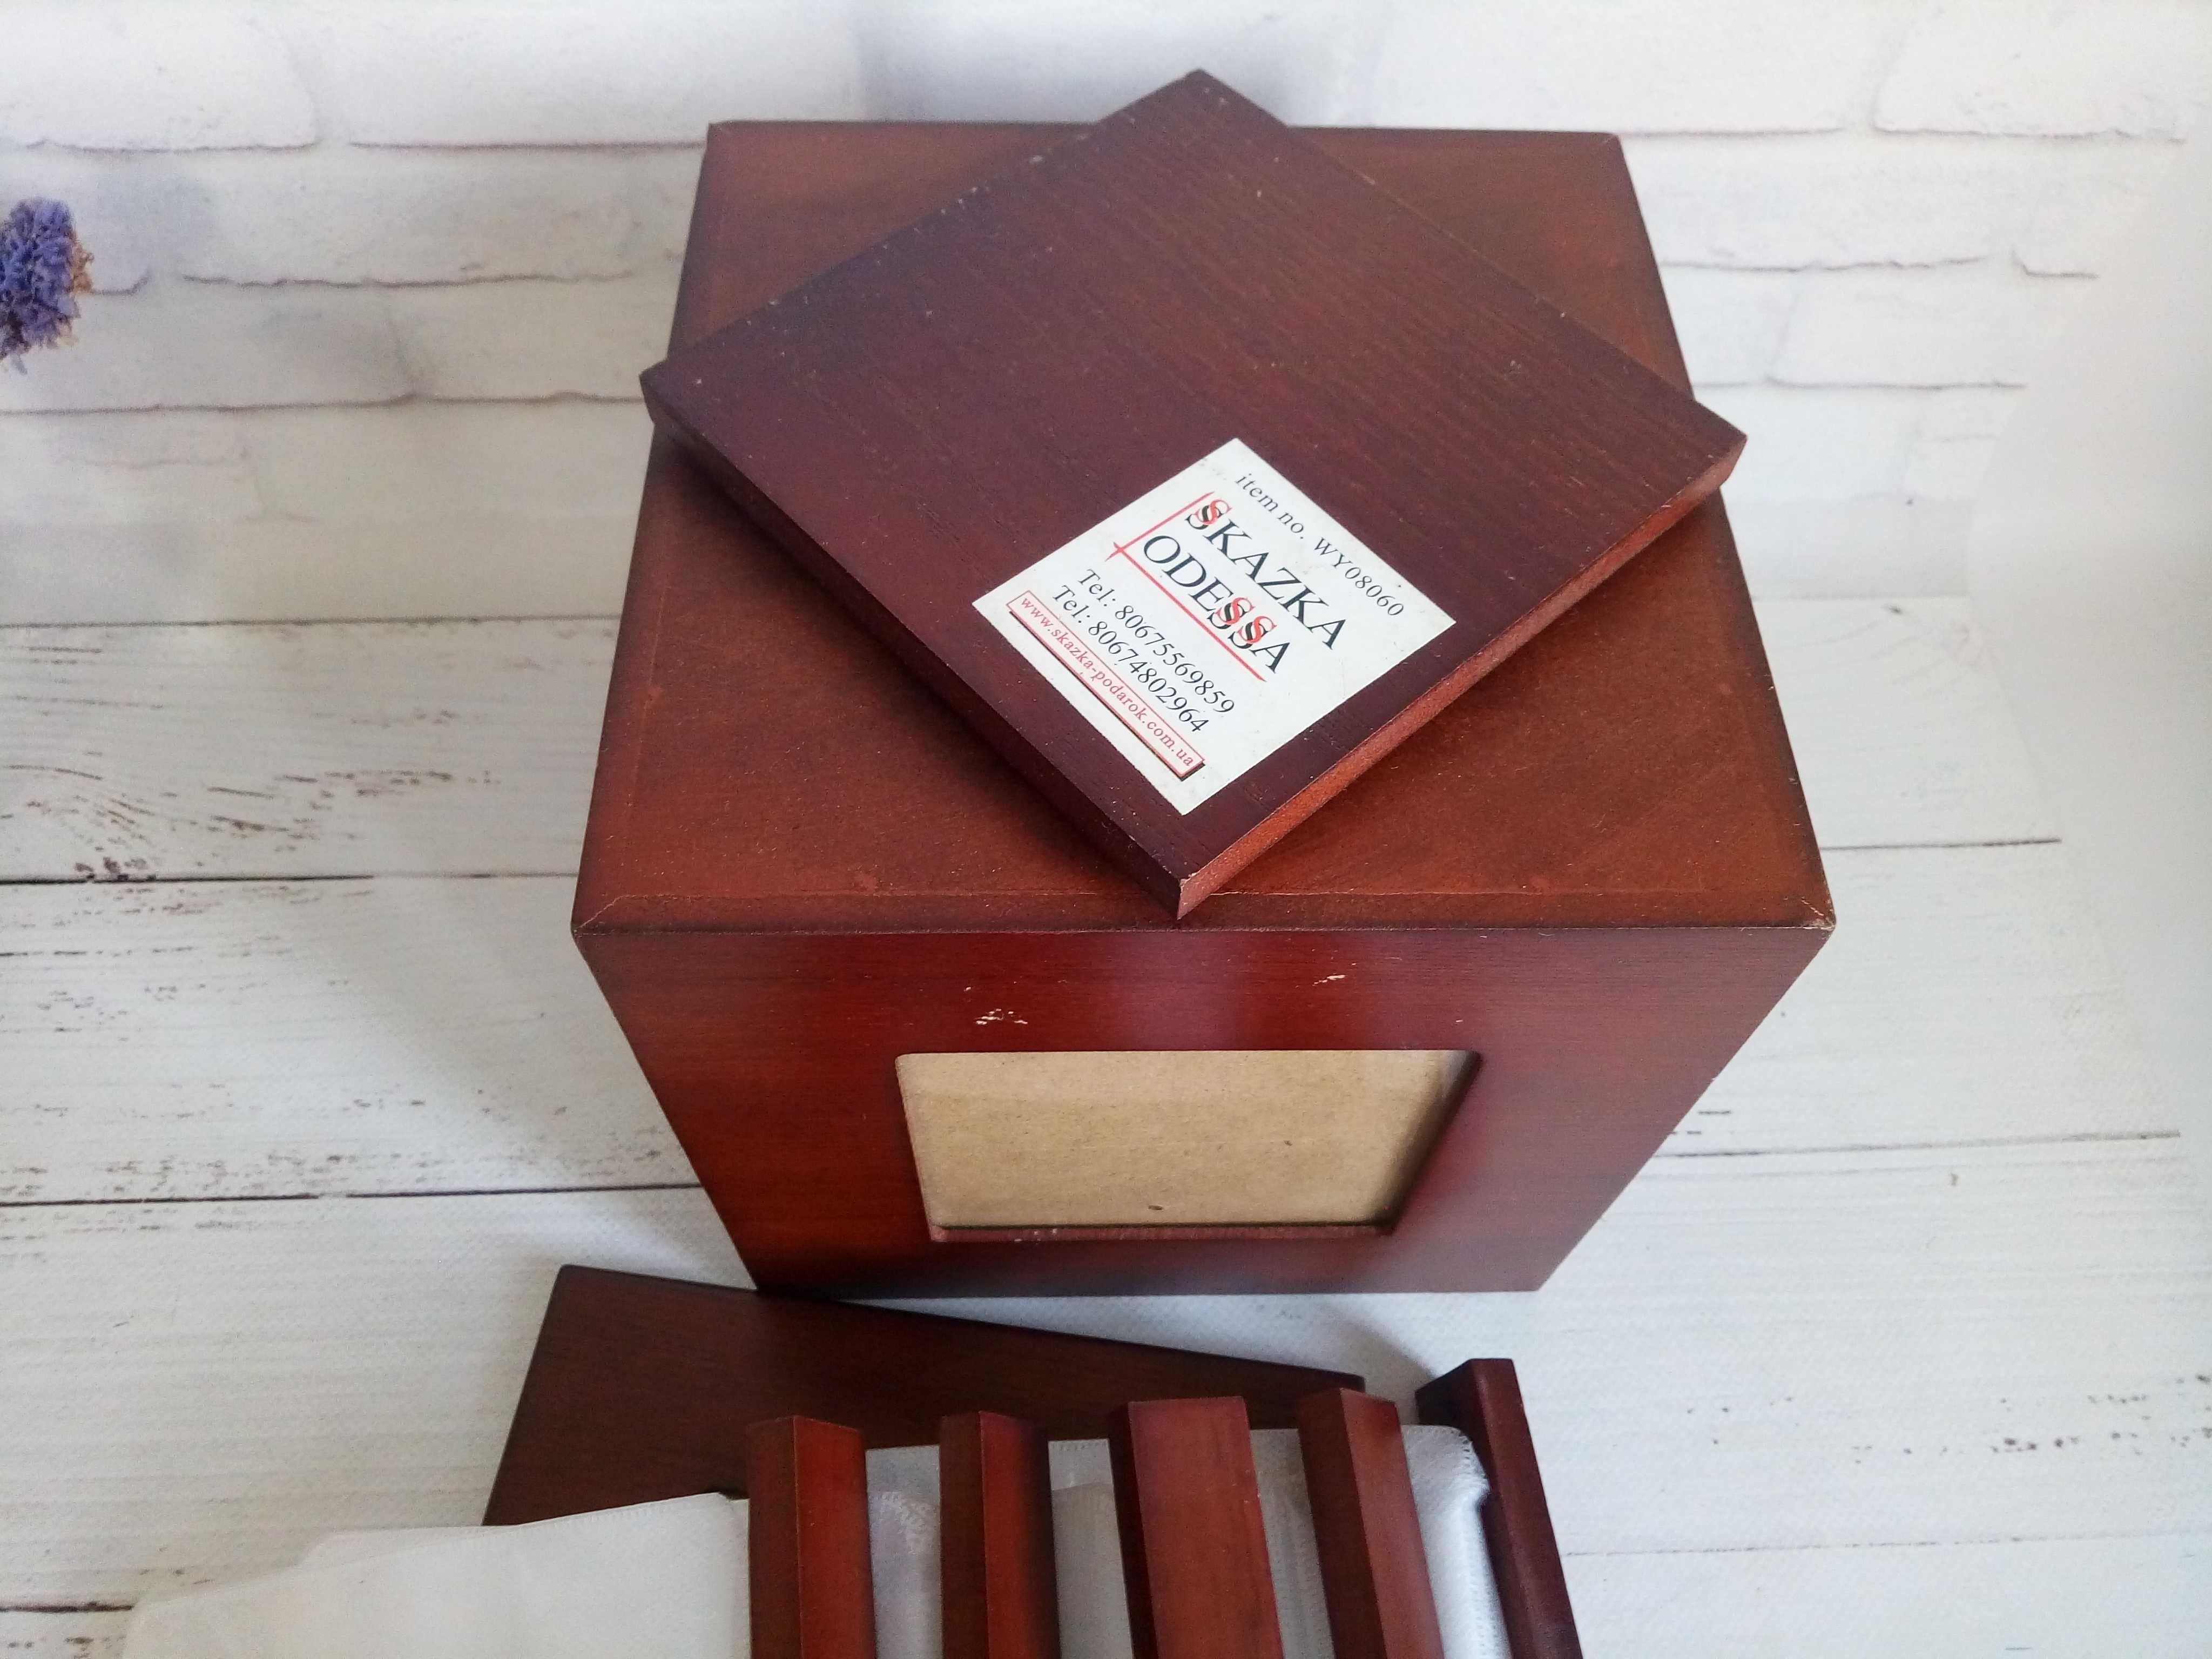 дерев'яний ящик - фоторамка, для зберігання дисків CD та дрібних речей